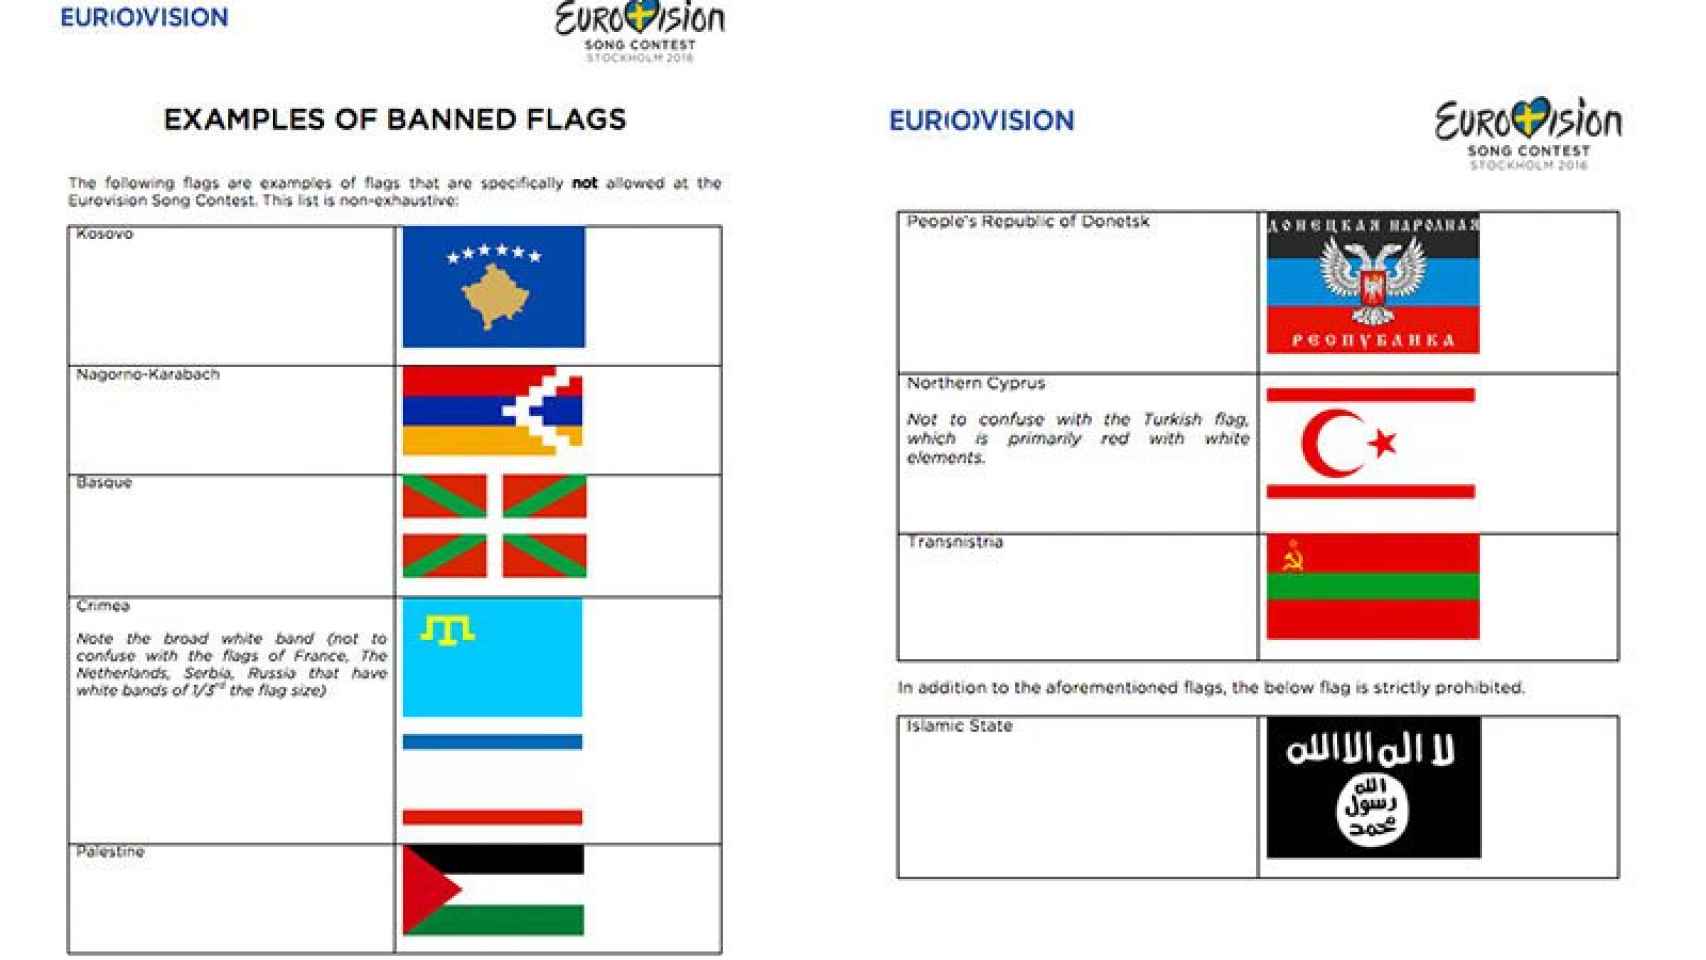 La ikurriña, entre los ejemplos de banderas prohibidas en el festival de Eurovisión